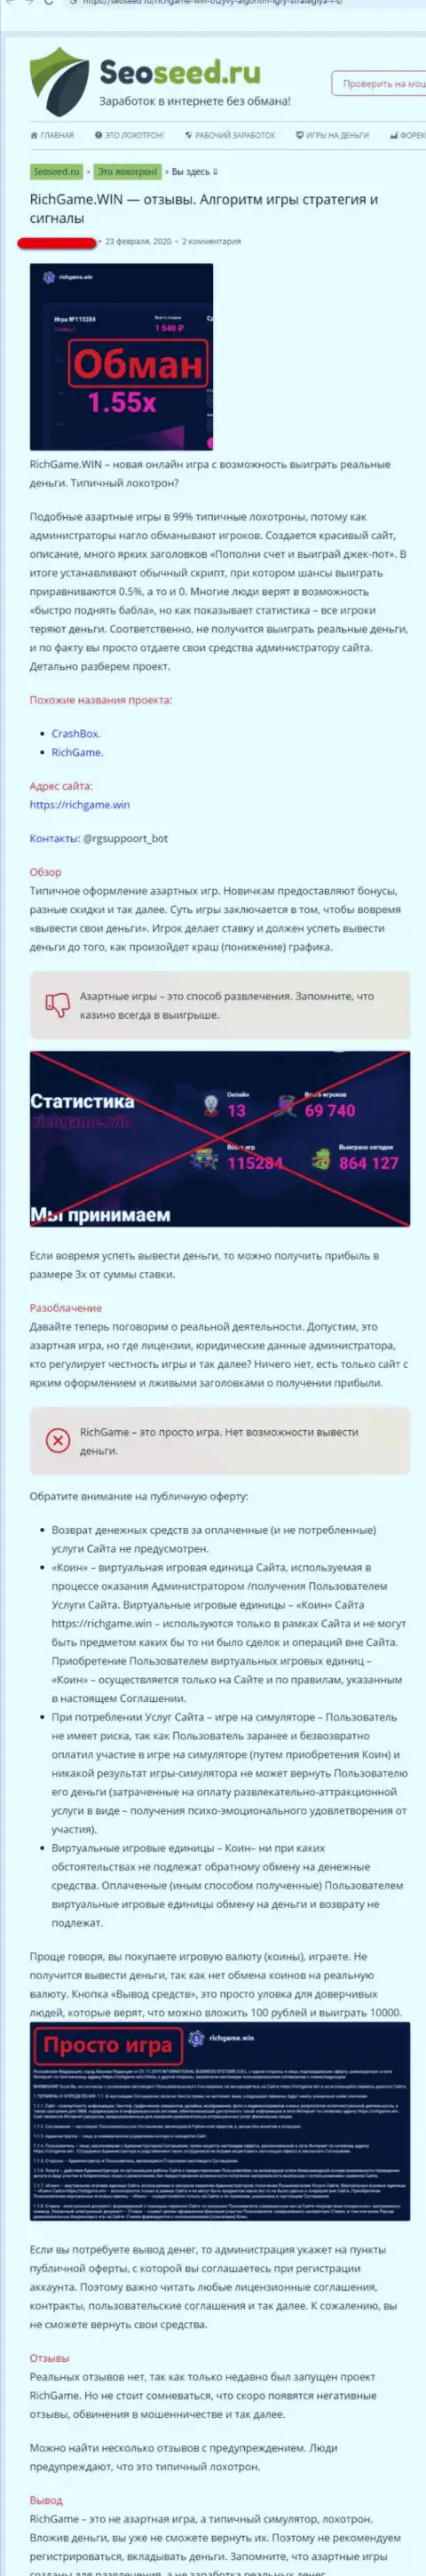 Обзор и комментарии об организации RichGame Win - это МОШЕННИКИ !!!